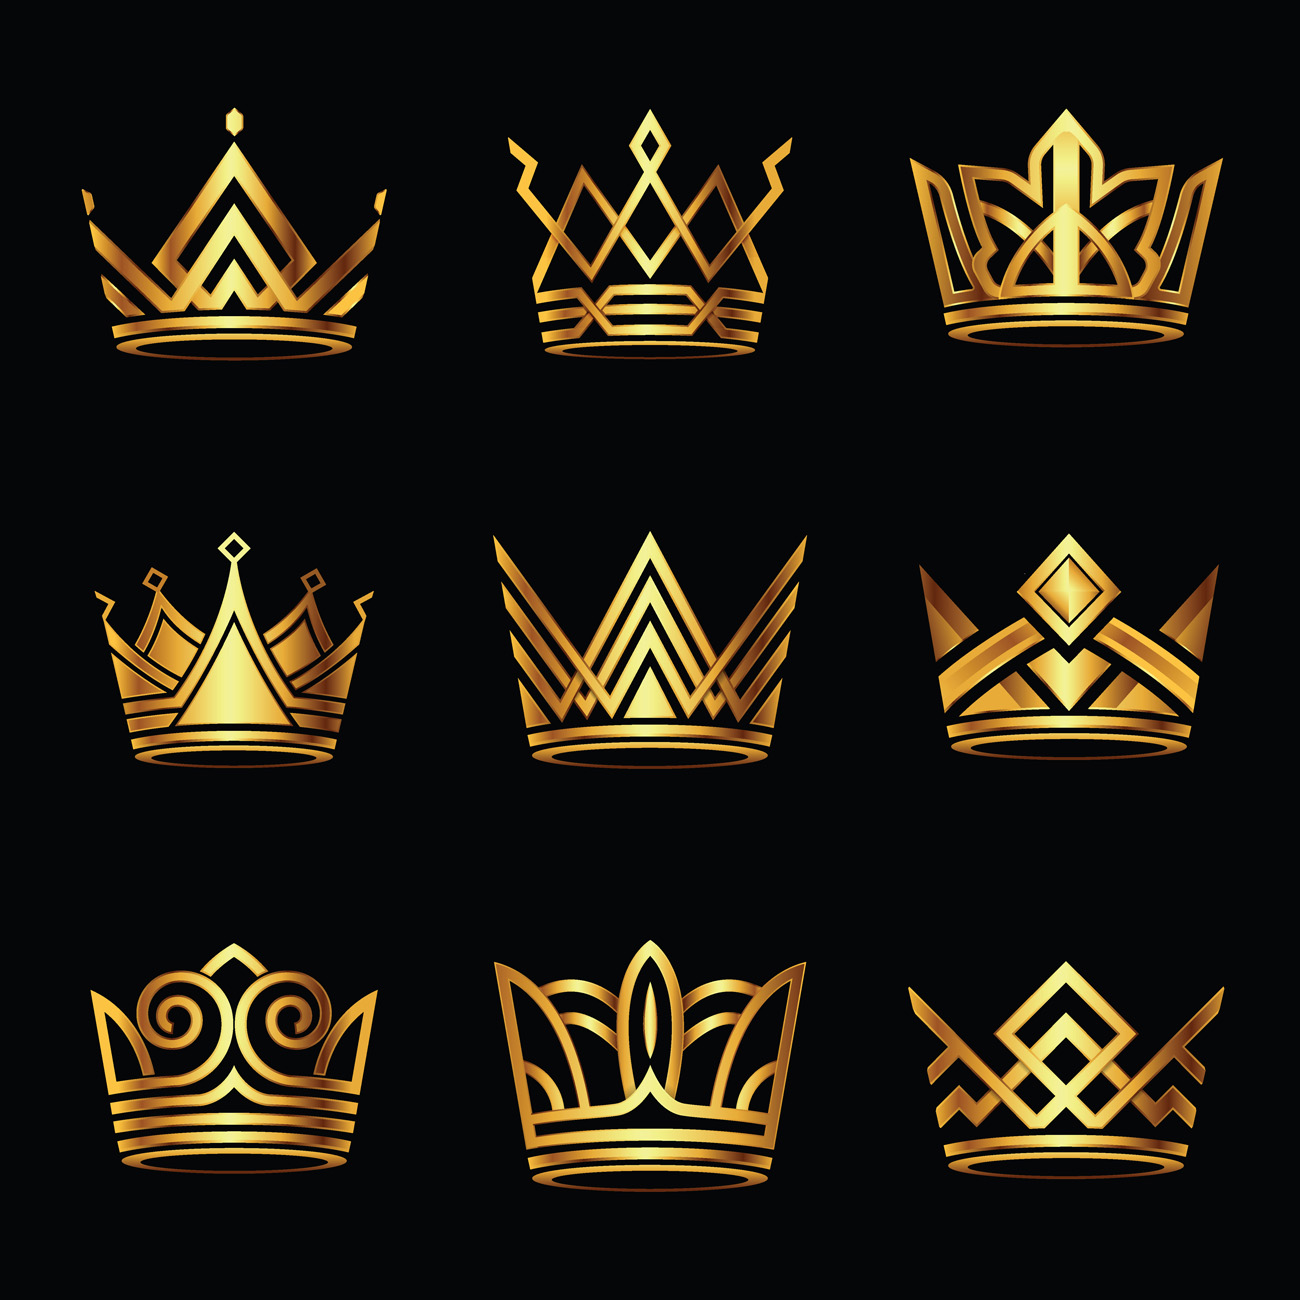 金色皇冠国王桂冠女王冠冕图标合辑插图元素装饰EPS矢量素材